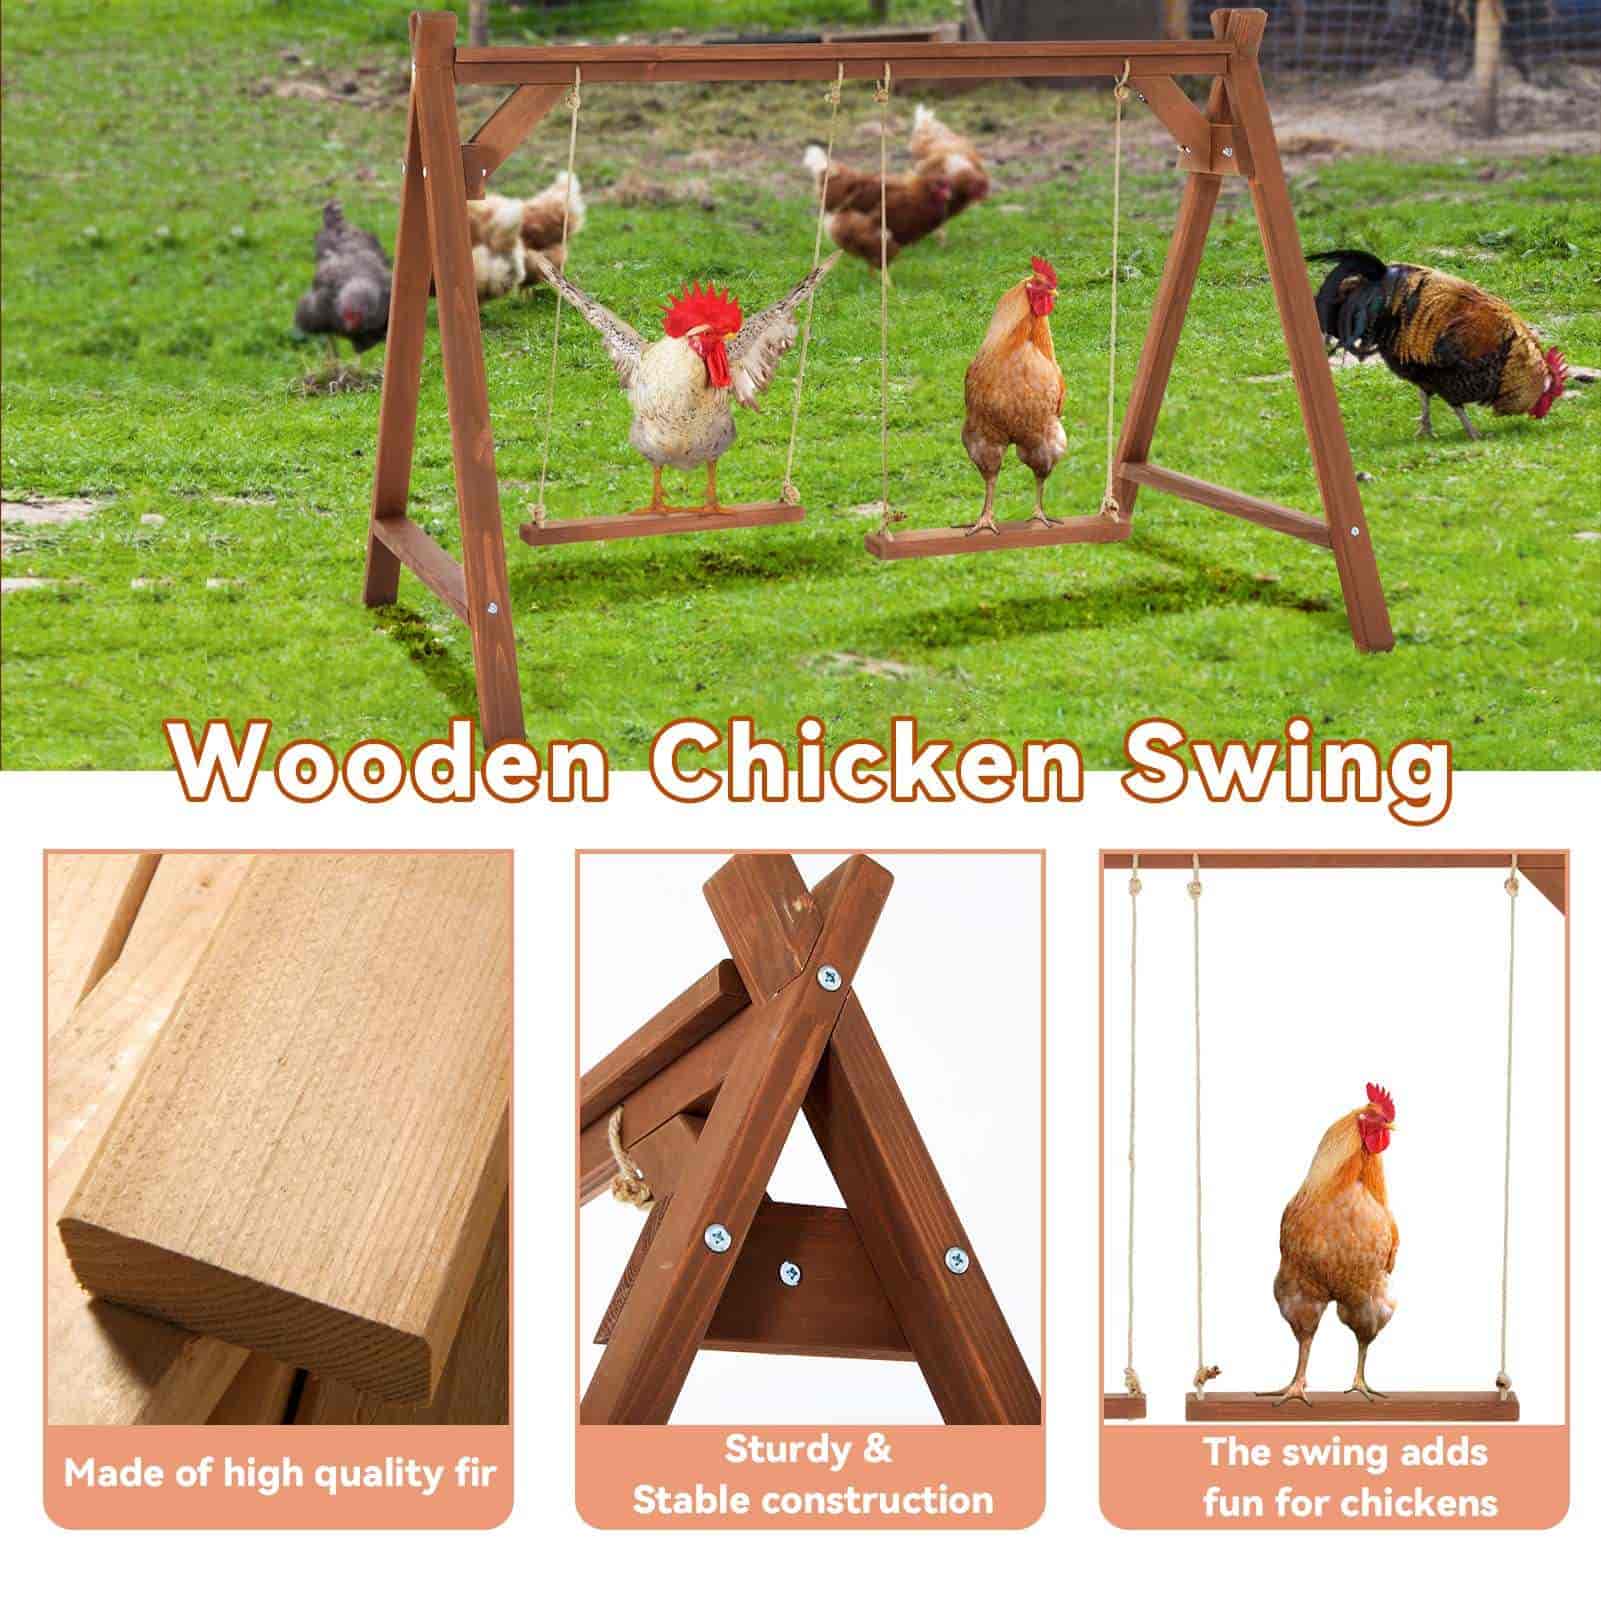 PETSFIT 2 Hühnerschaukeln und Spielzeug, Hühnerstange für Haustiere, gesundes und spielbares Hühnerstallzubehör für 6–8 Hühner